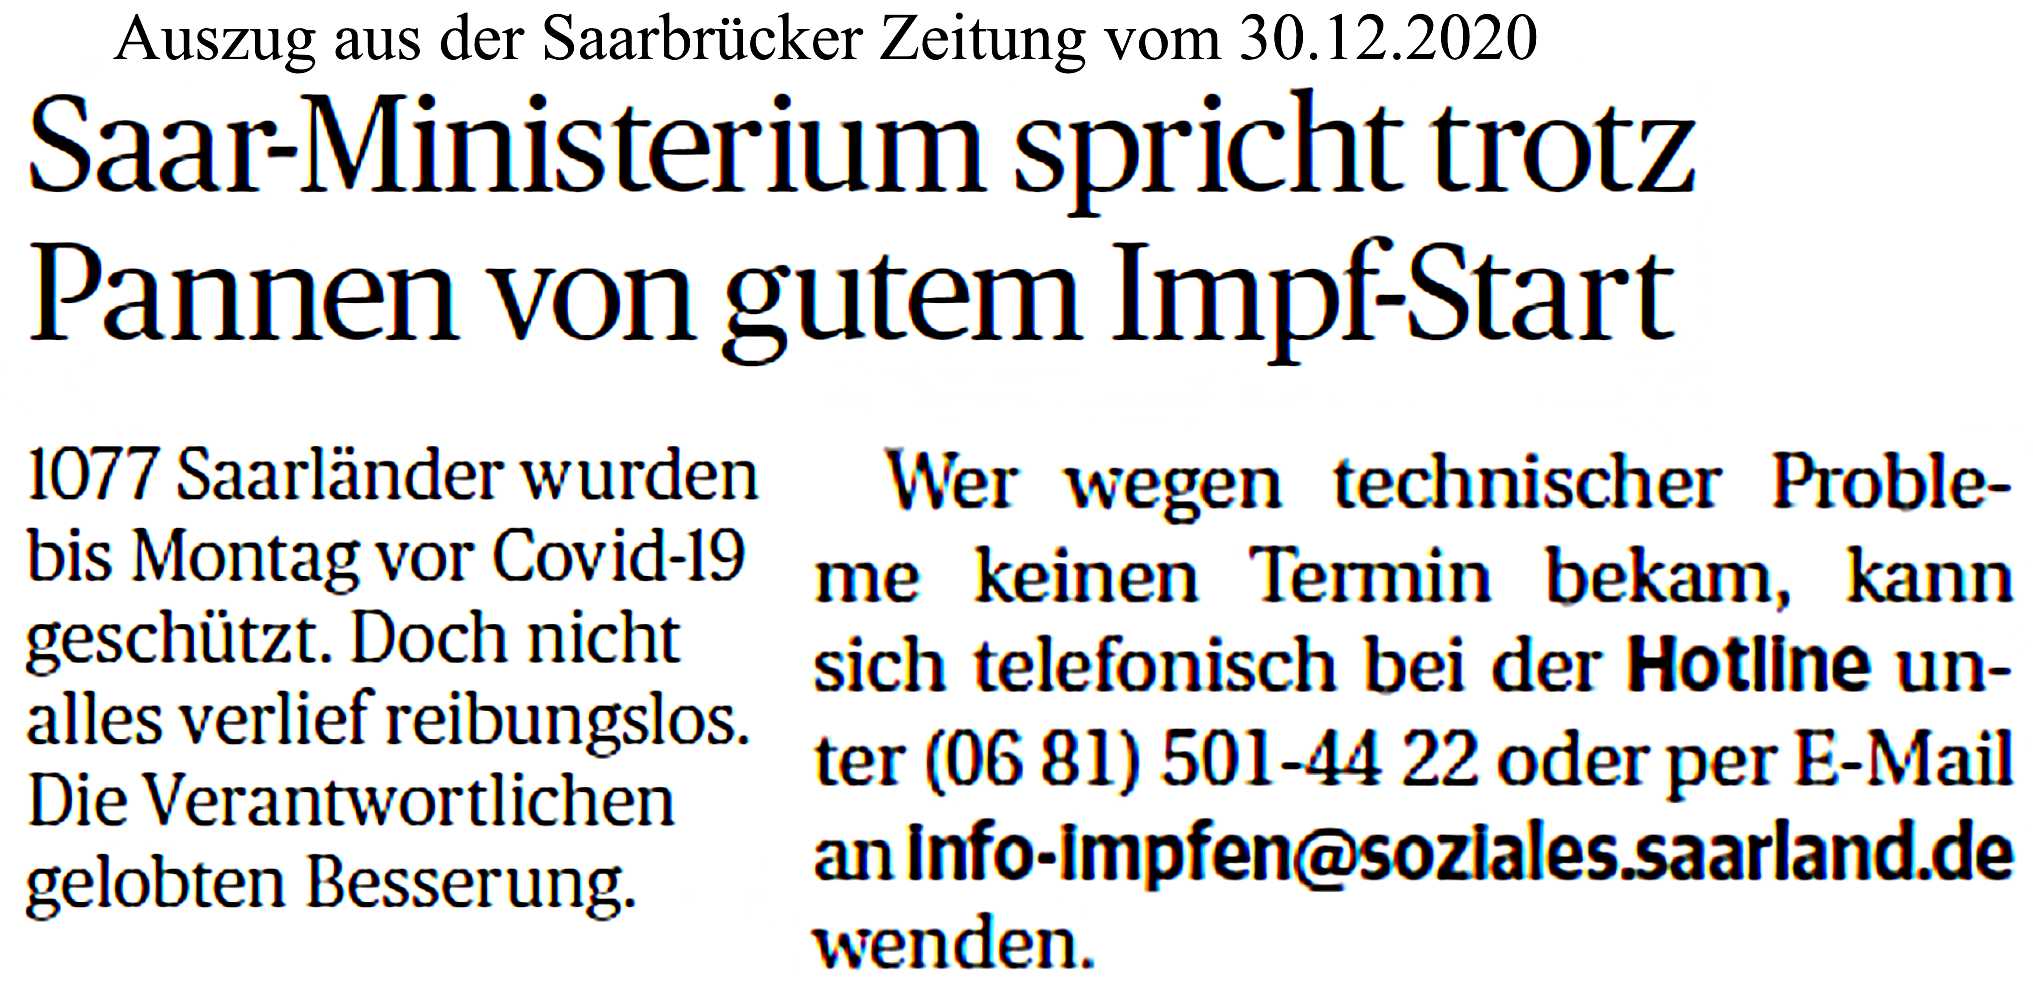 Info über Impf-Start in Saarbrücker Zeitung vom 30.12.2020